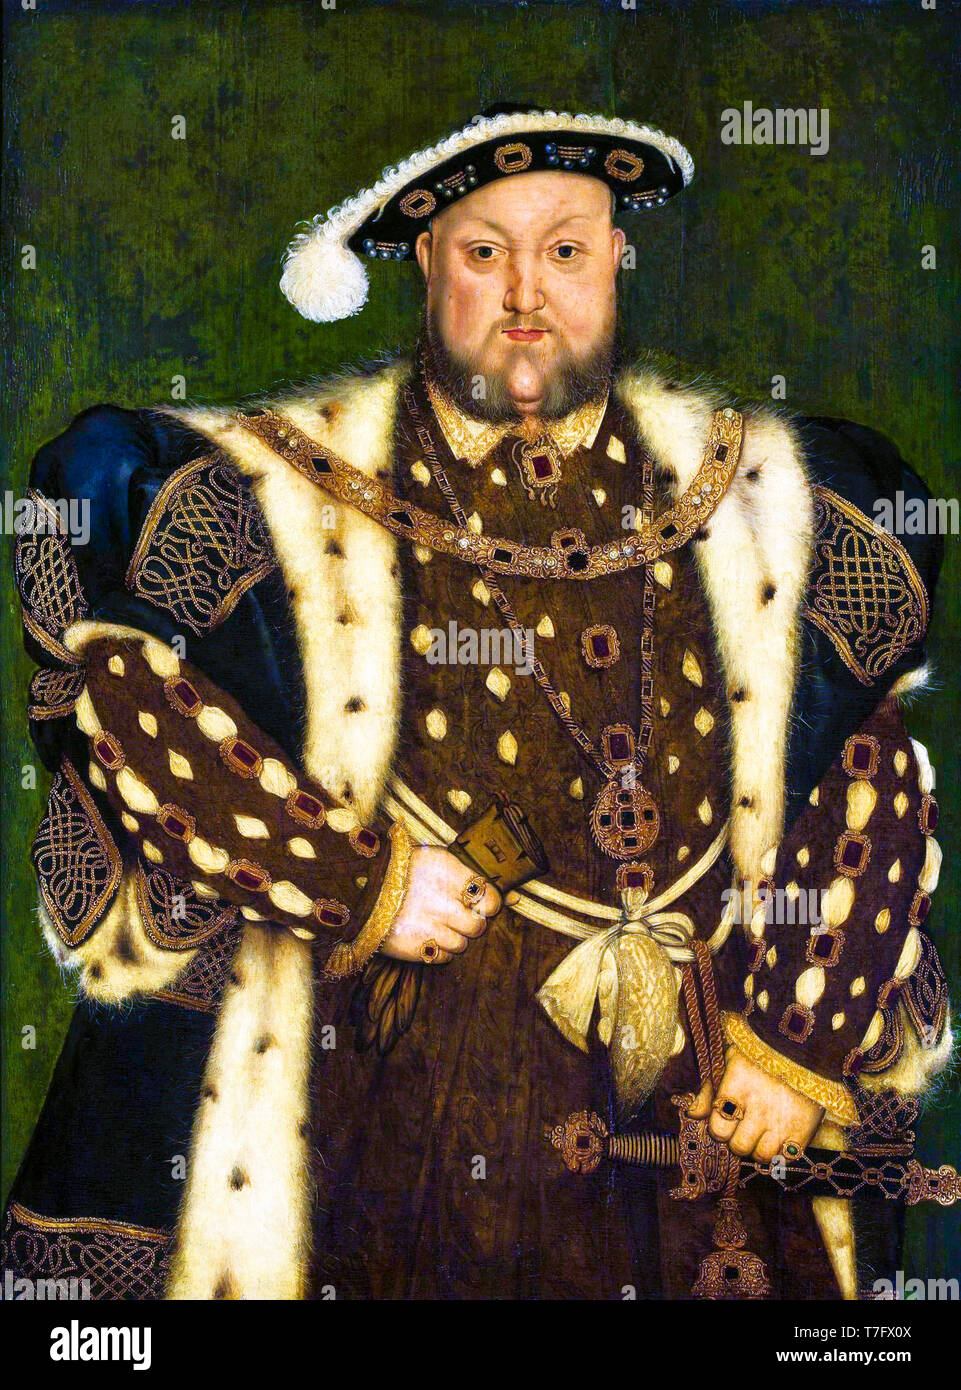 König Heinrich VIII Porträt Heinrich VIII. Von England (1491-1547), zugeschrieben Lucas Horenbout, Werkstatt von Hans Holbein, um 1540s Stockfoto